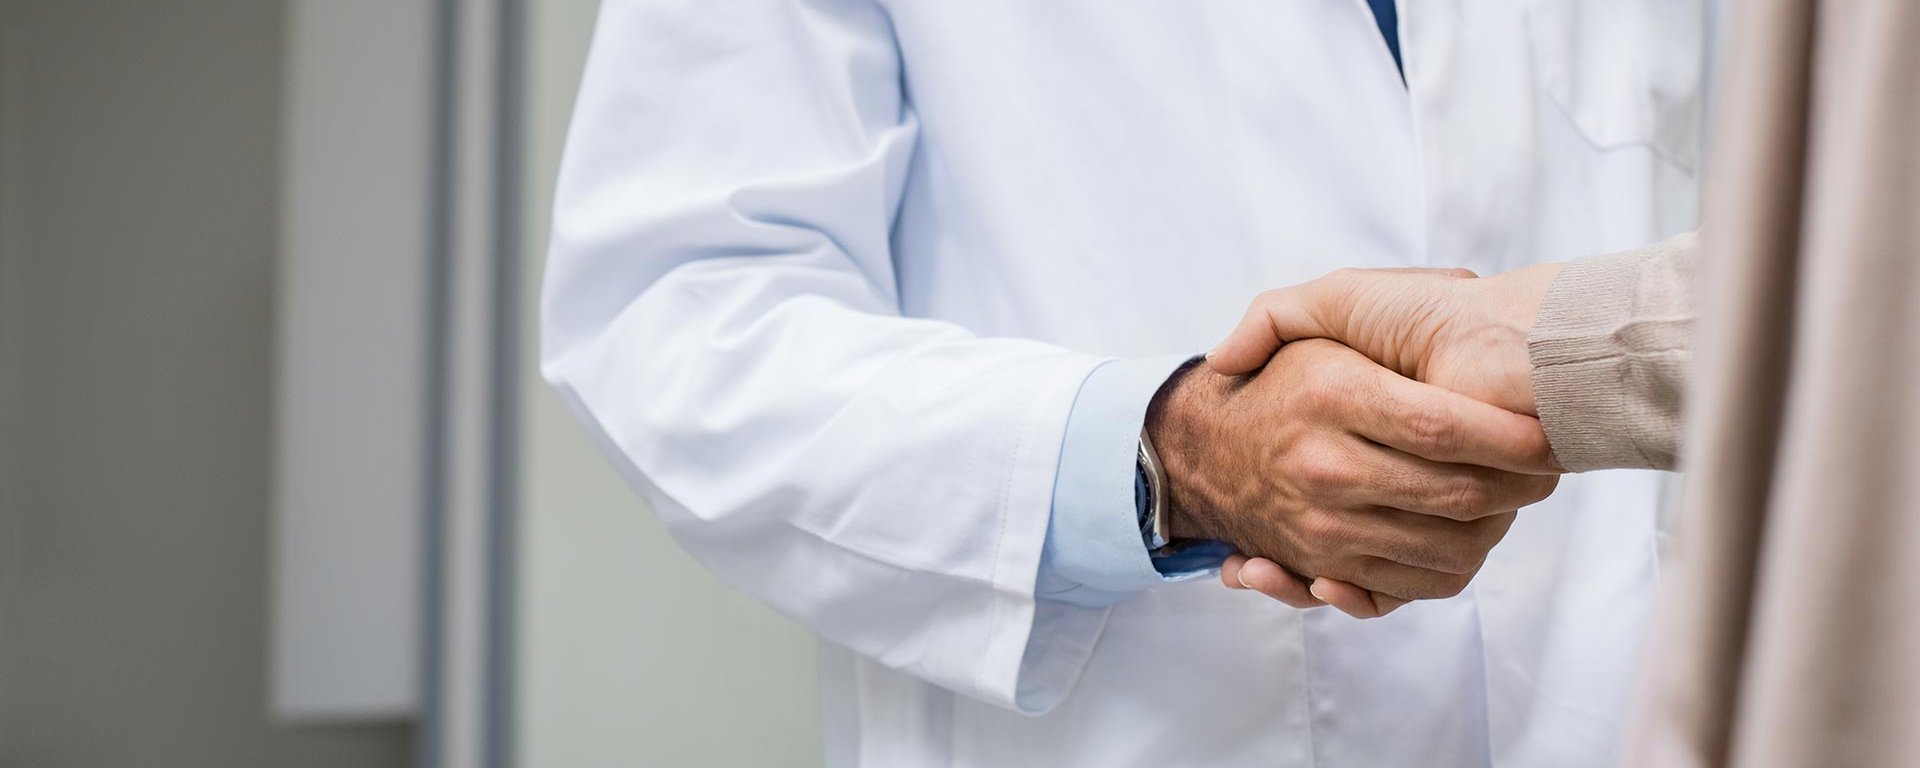 Facharzt aus dem MVZ-Fachpraxenverbund Allgäu gibt einem Patienten die Hand